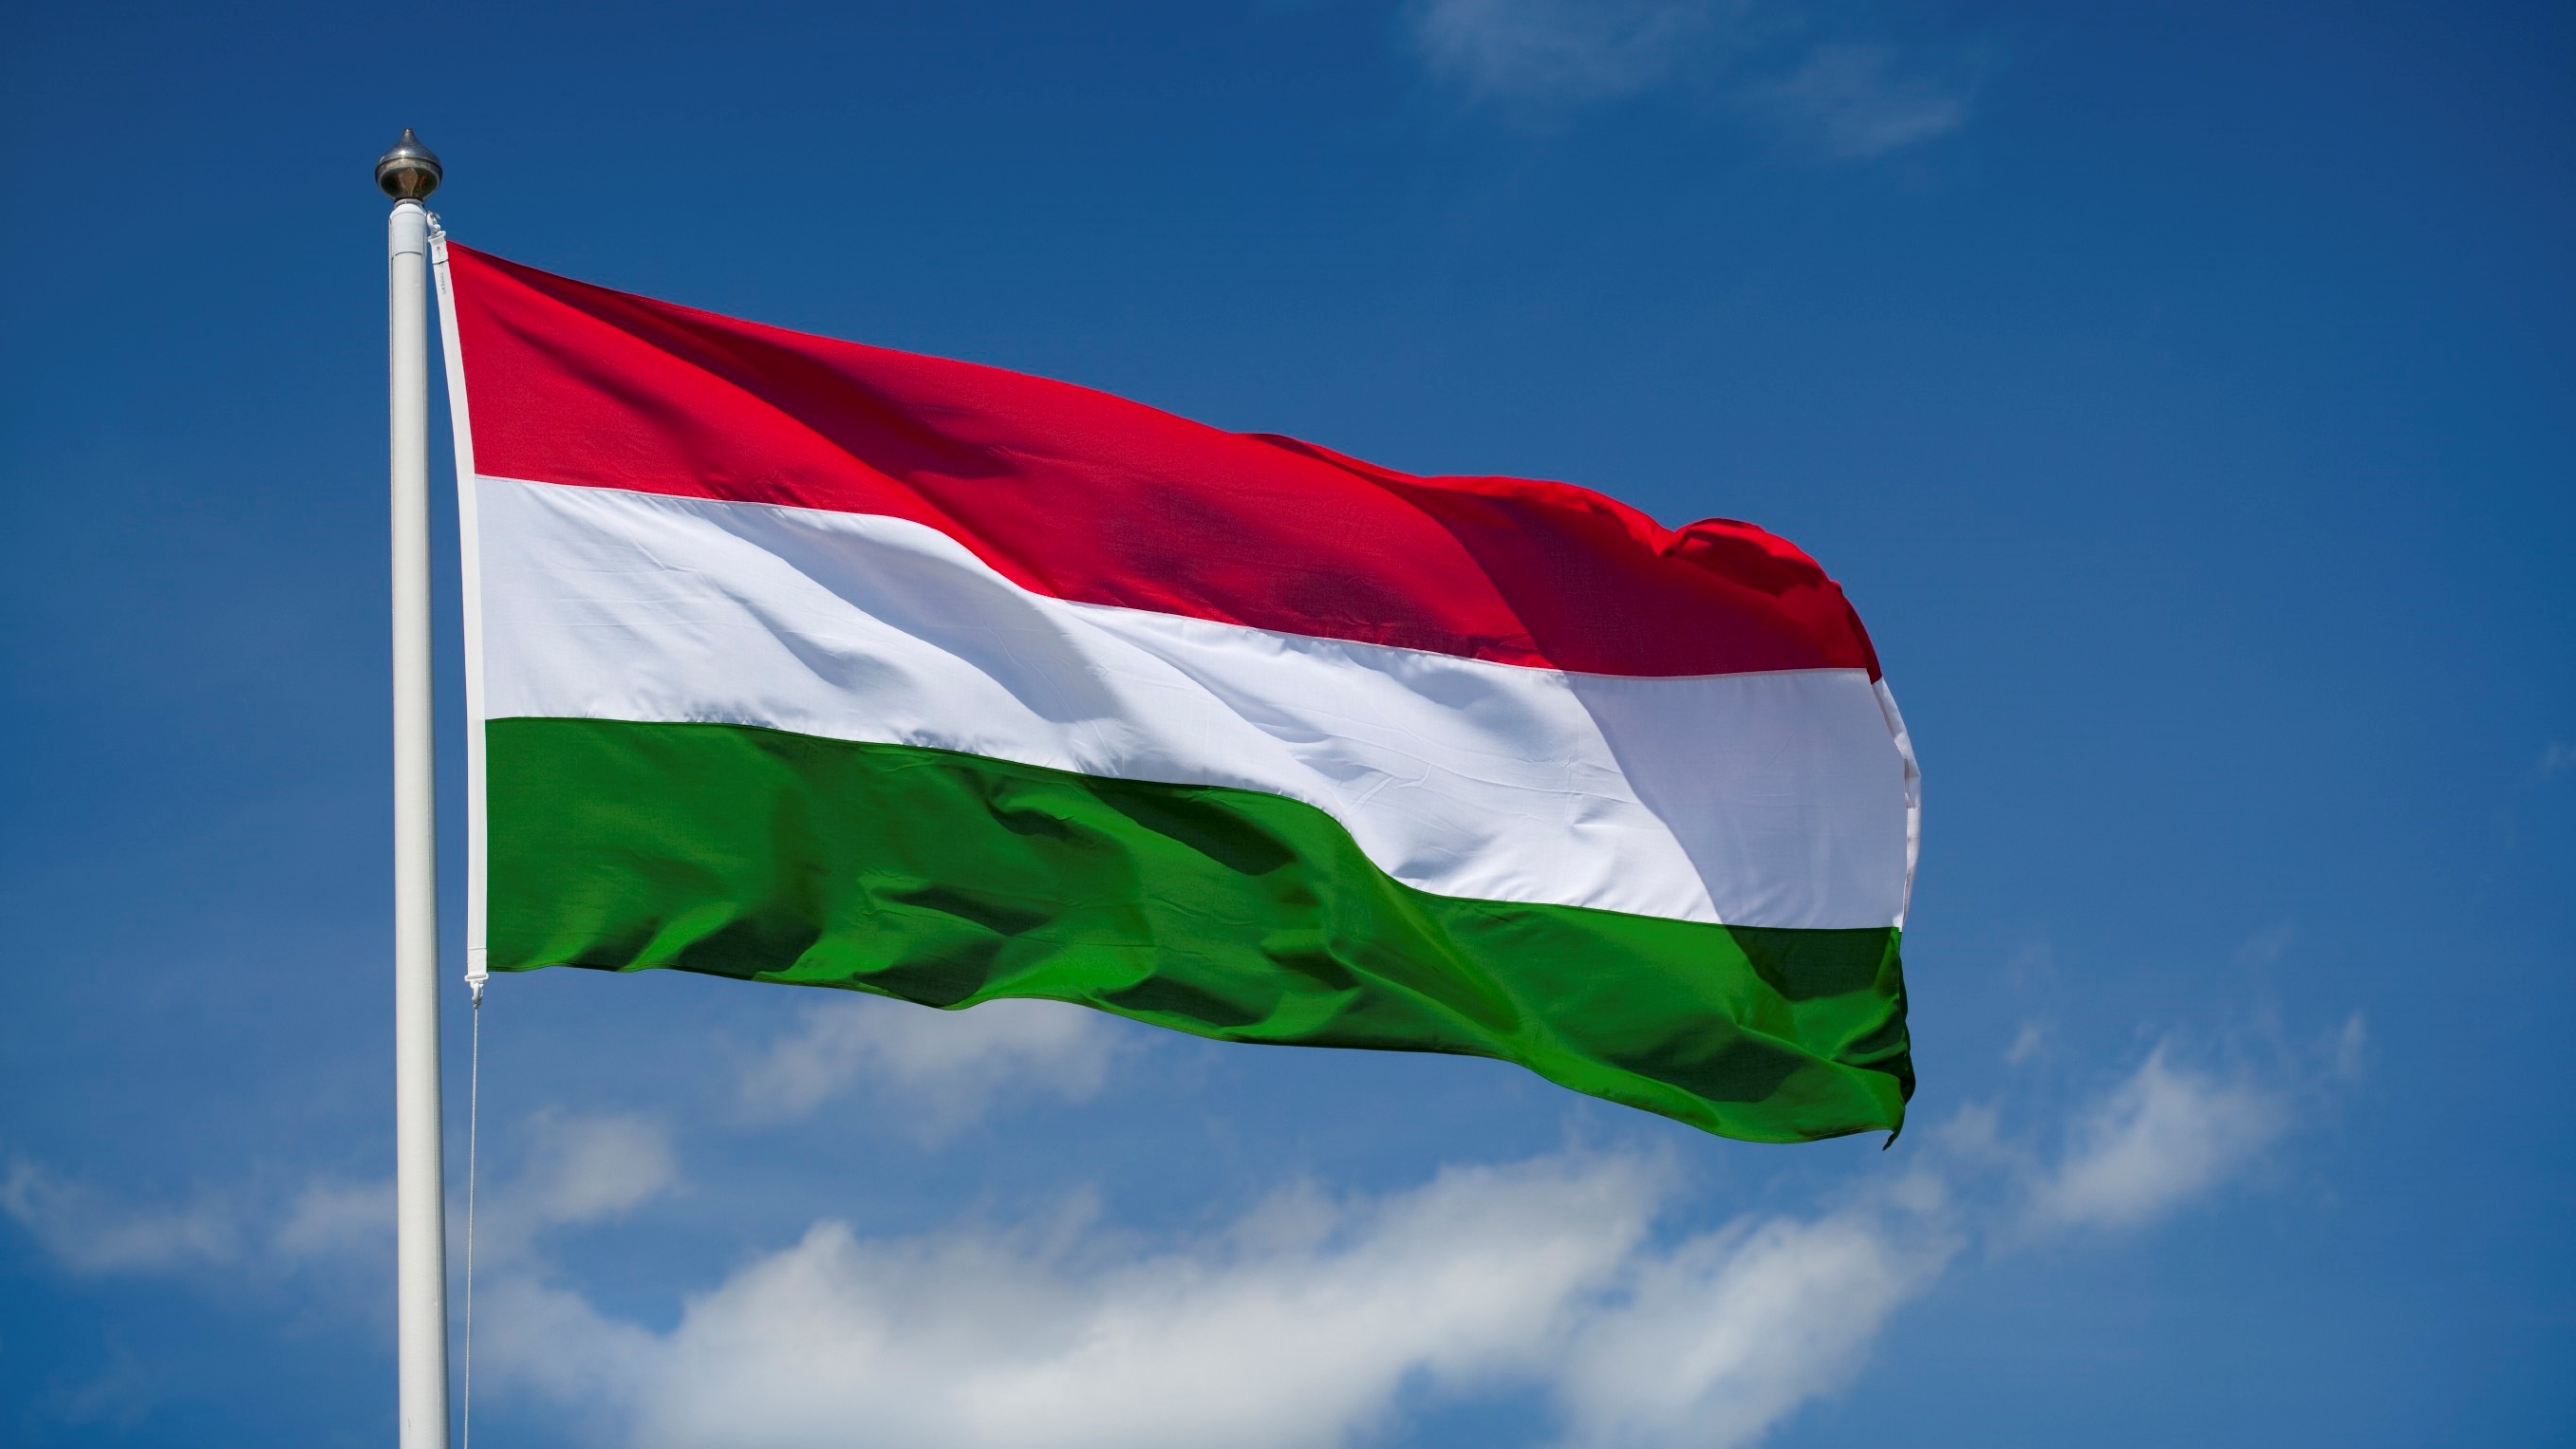 Macaristan İkili Geçiş Belgeleri 15.05.2021 Tarihinde Kullanıma Açılacak